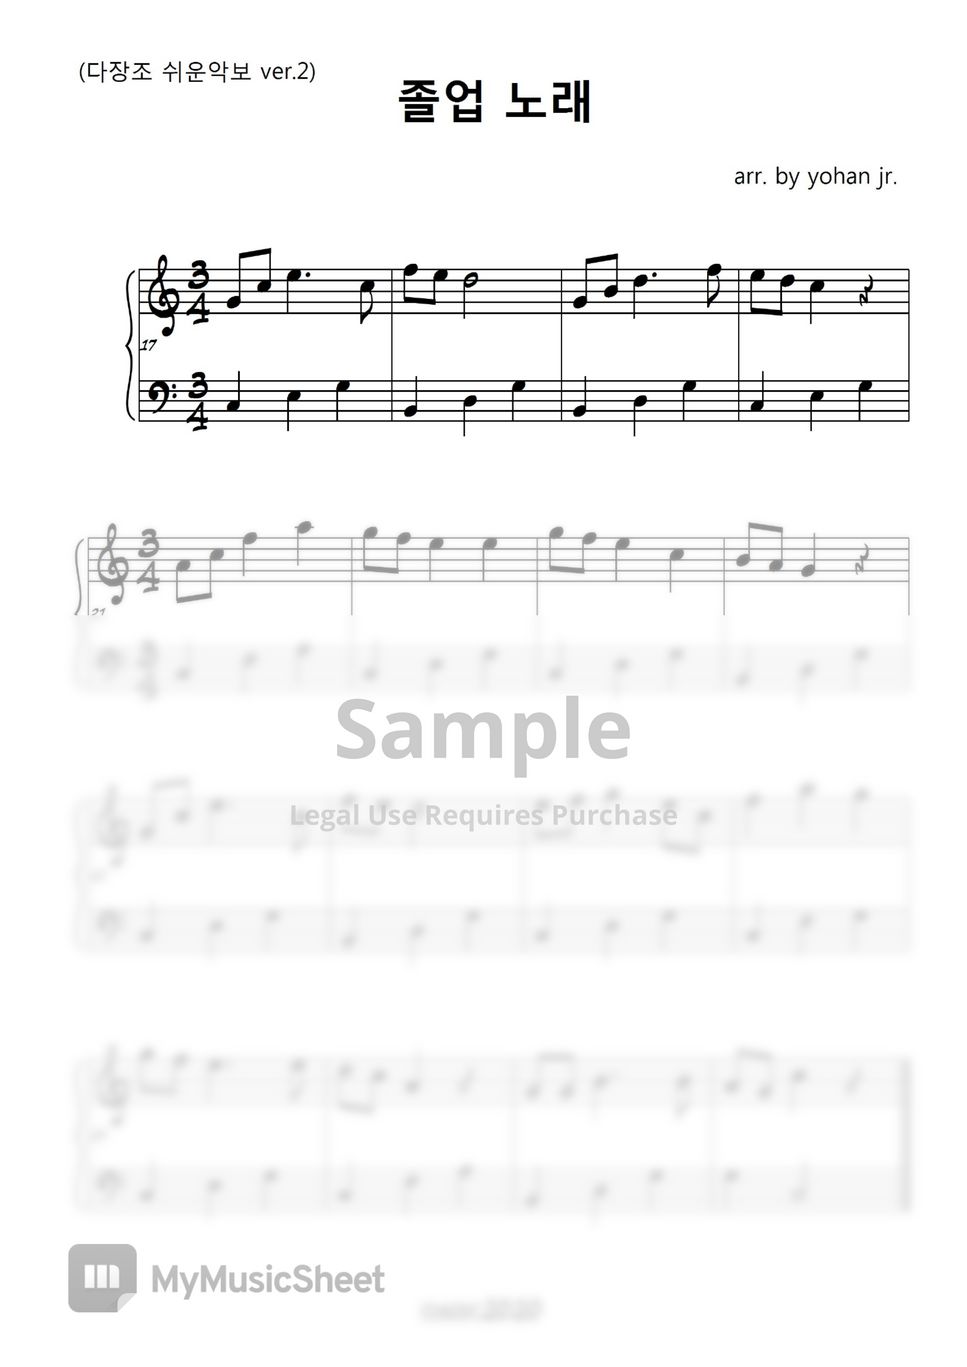 졸업노래 - Graduation Song (easy piano) by classic2020